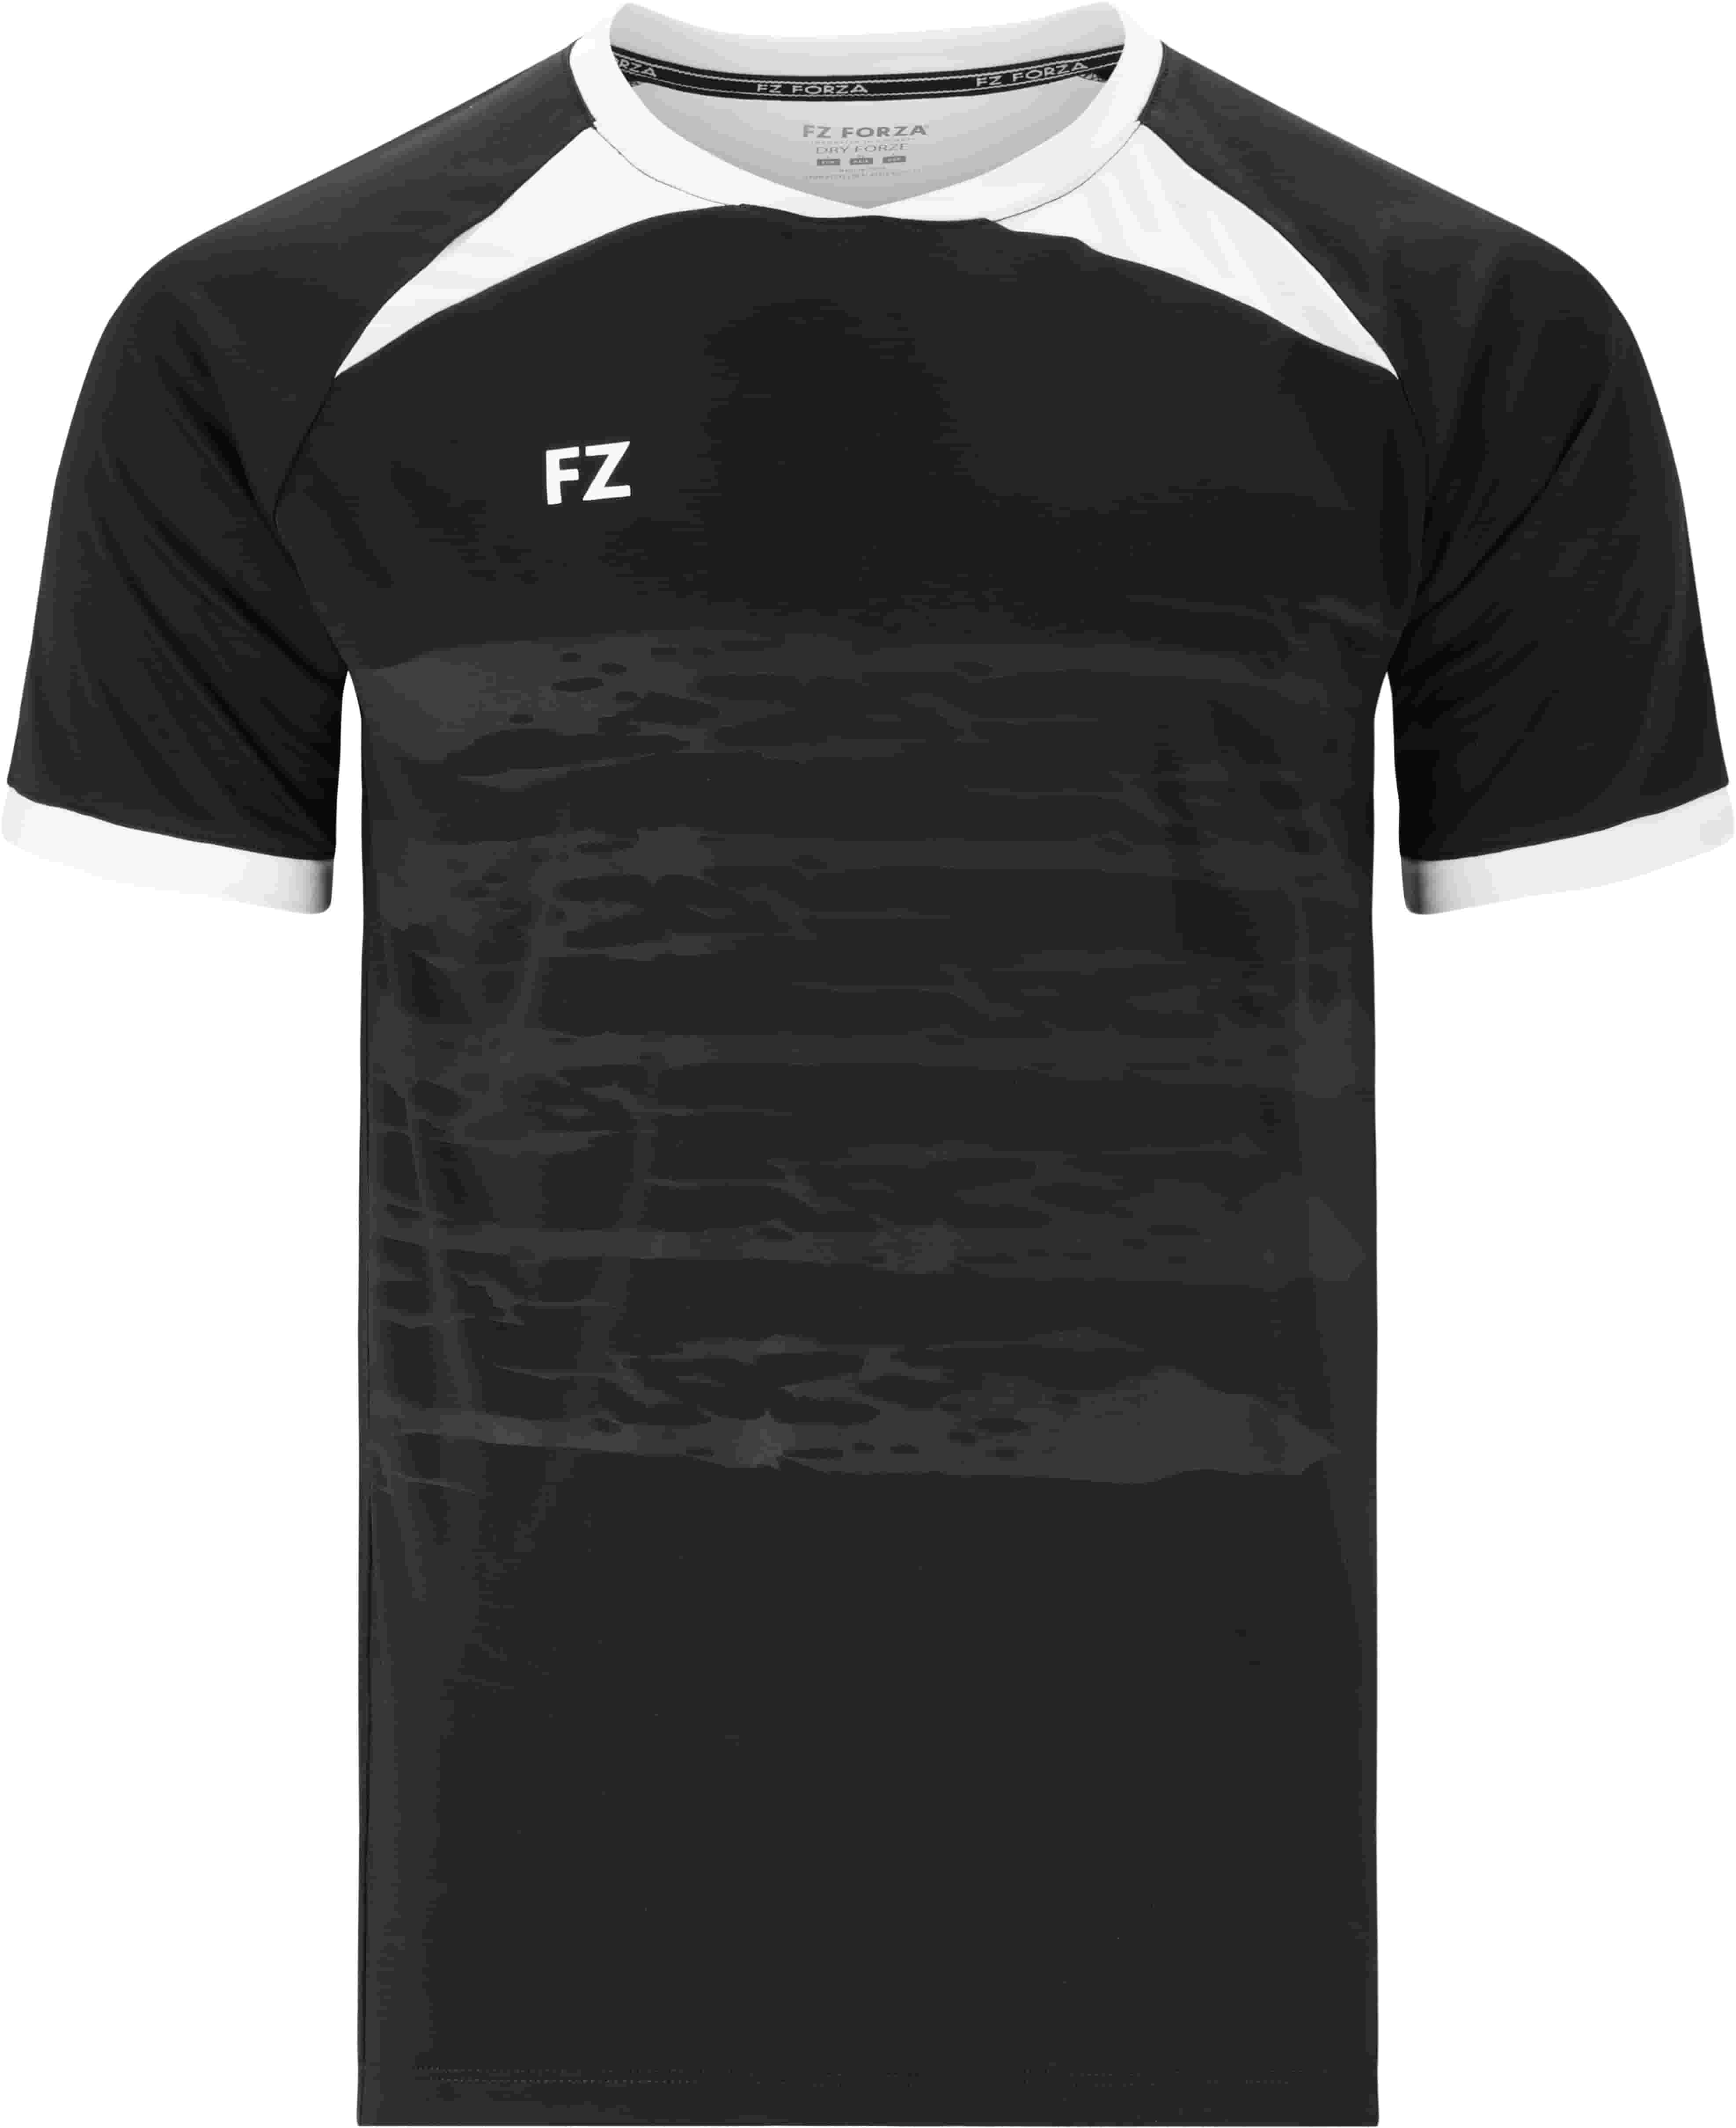 FZ FORZA Agentin M T-Shirt - Schwarz 12